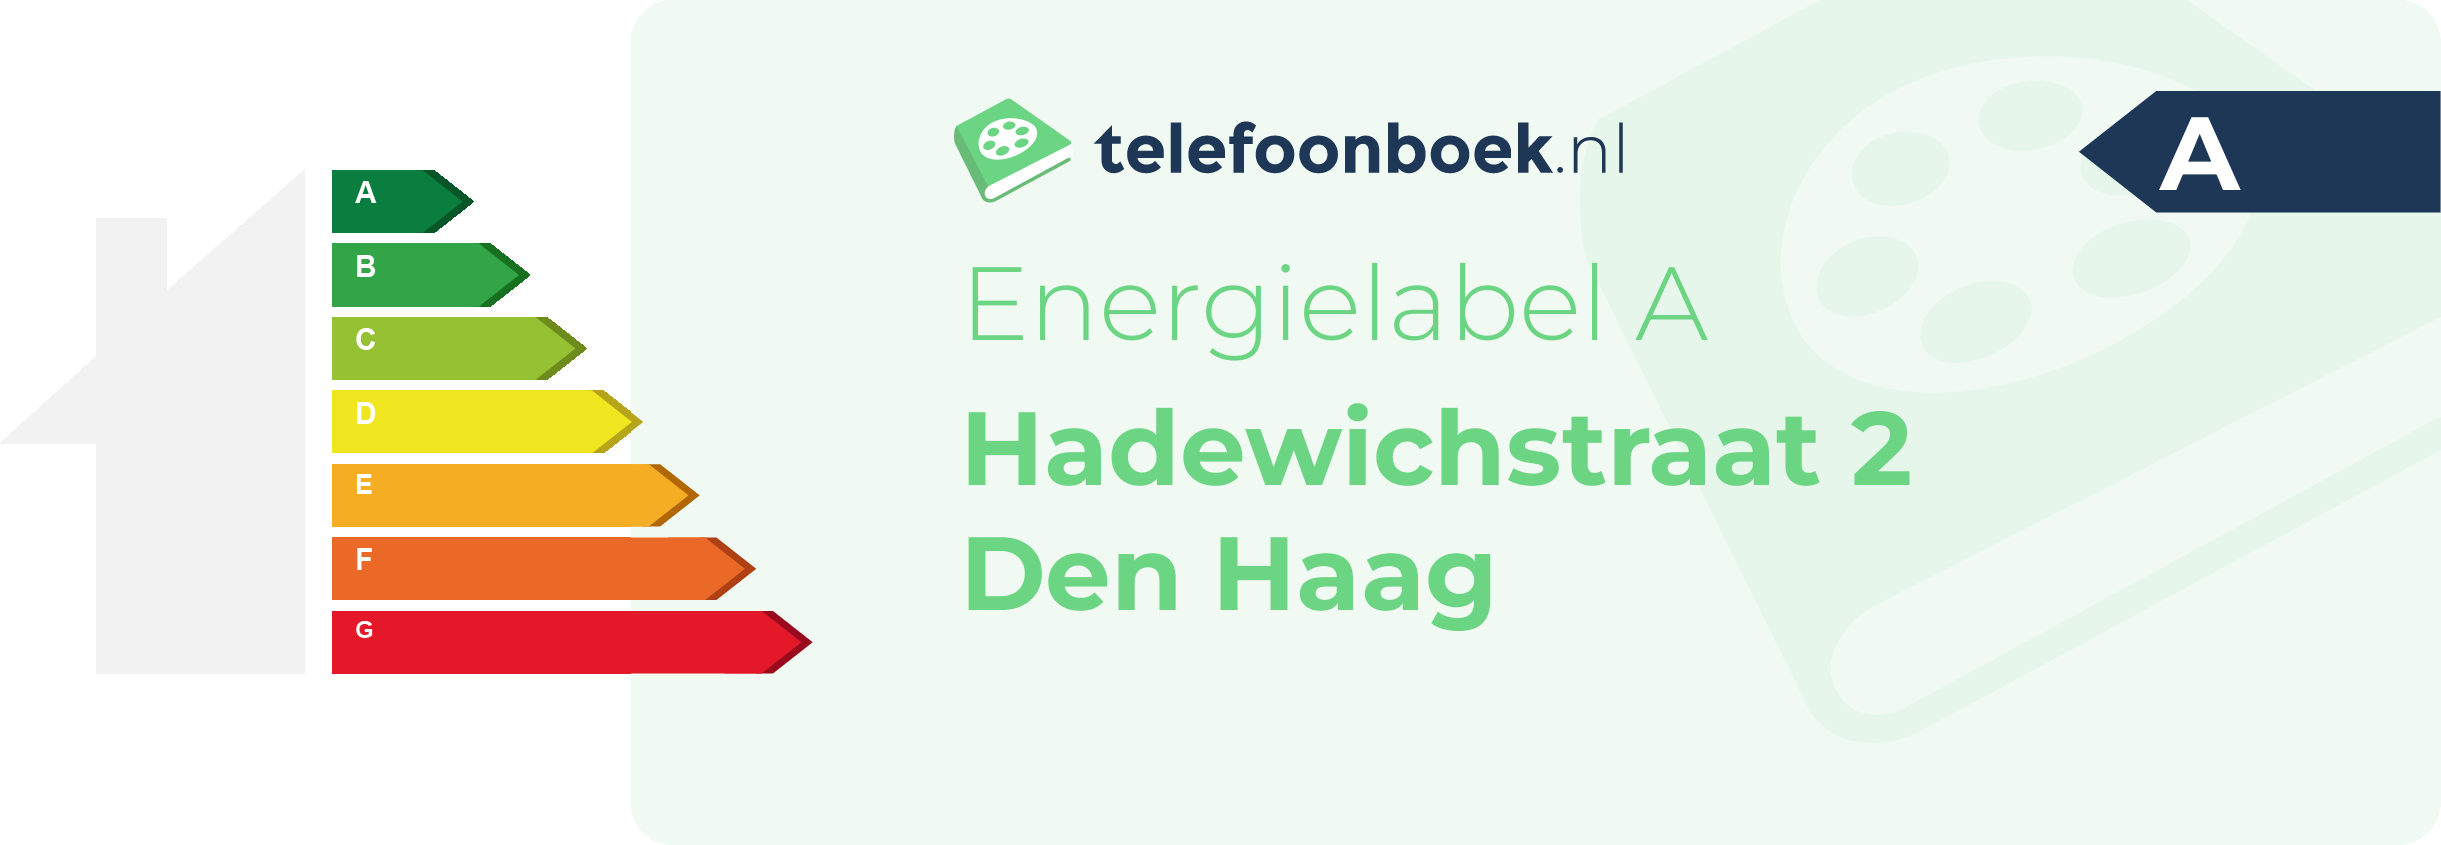 Energielabel Hadewichstraat 2 Den Haag